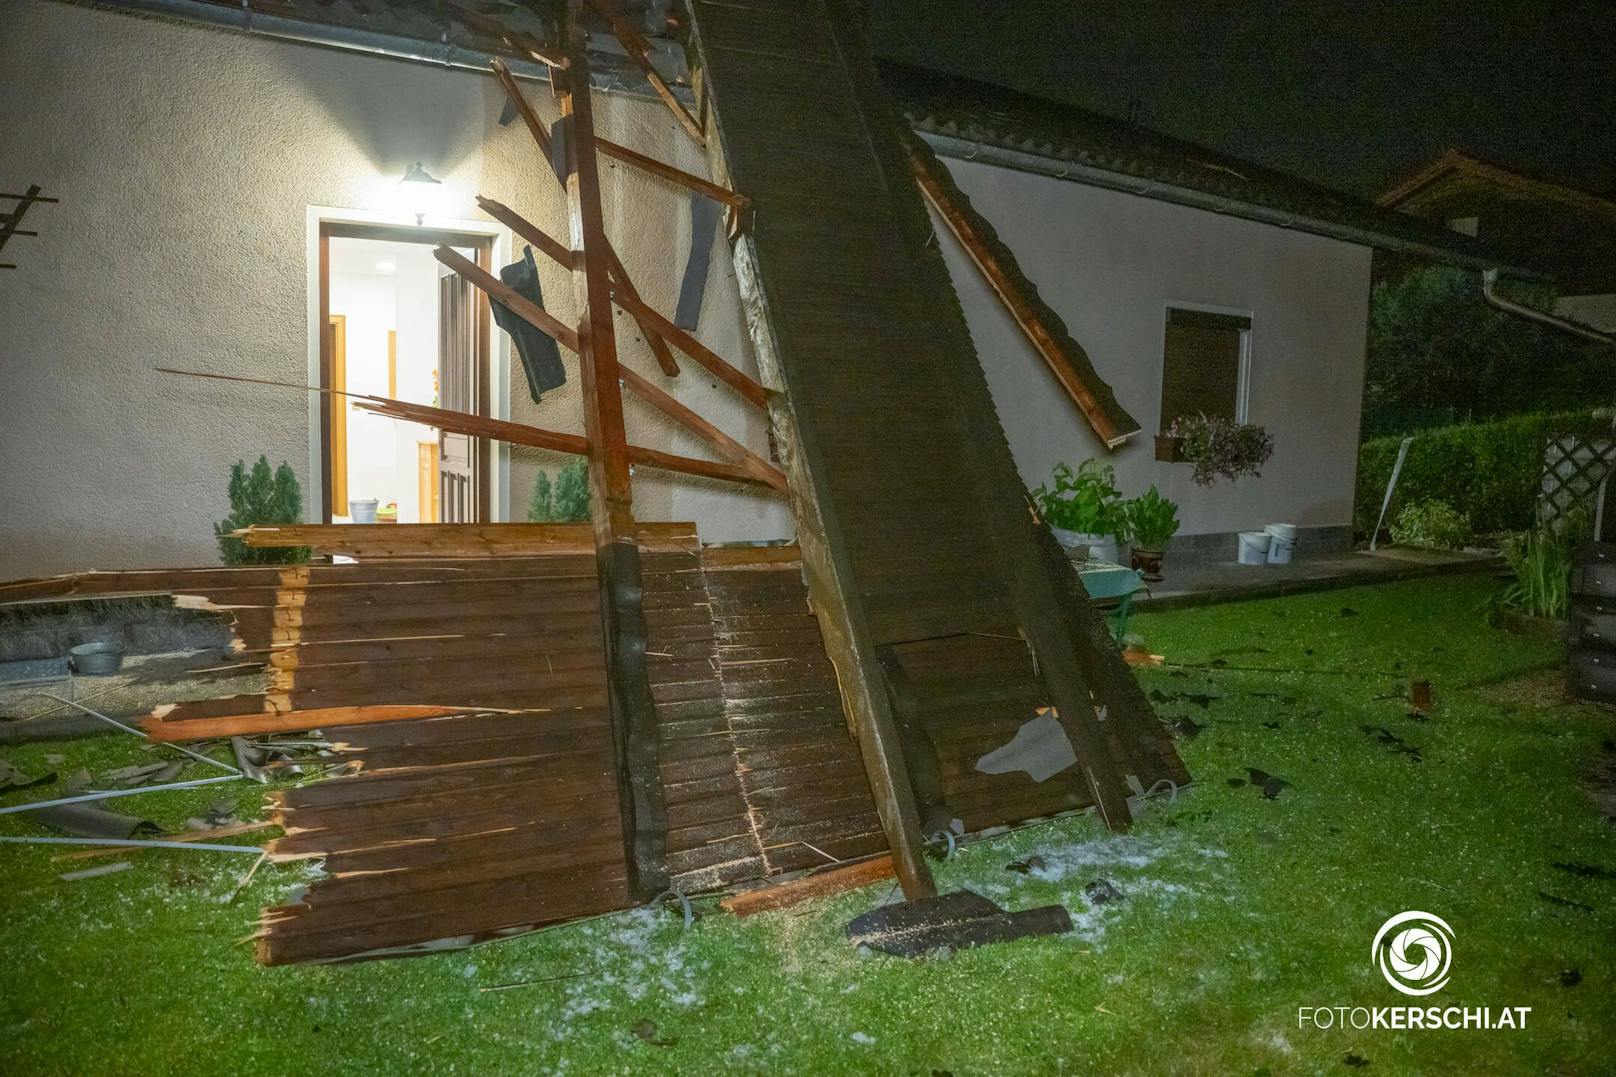 Schwere Unwetter mit riesigen Hagelkörnern haben für mehrere Einsätze der Feuerwehr gesorgt und massive Schäden in Österreich angerichtet.